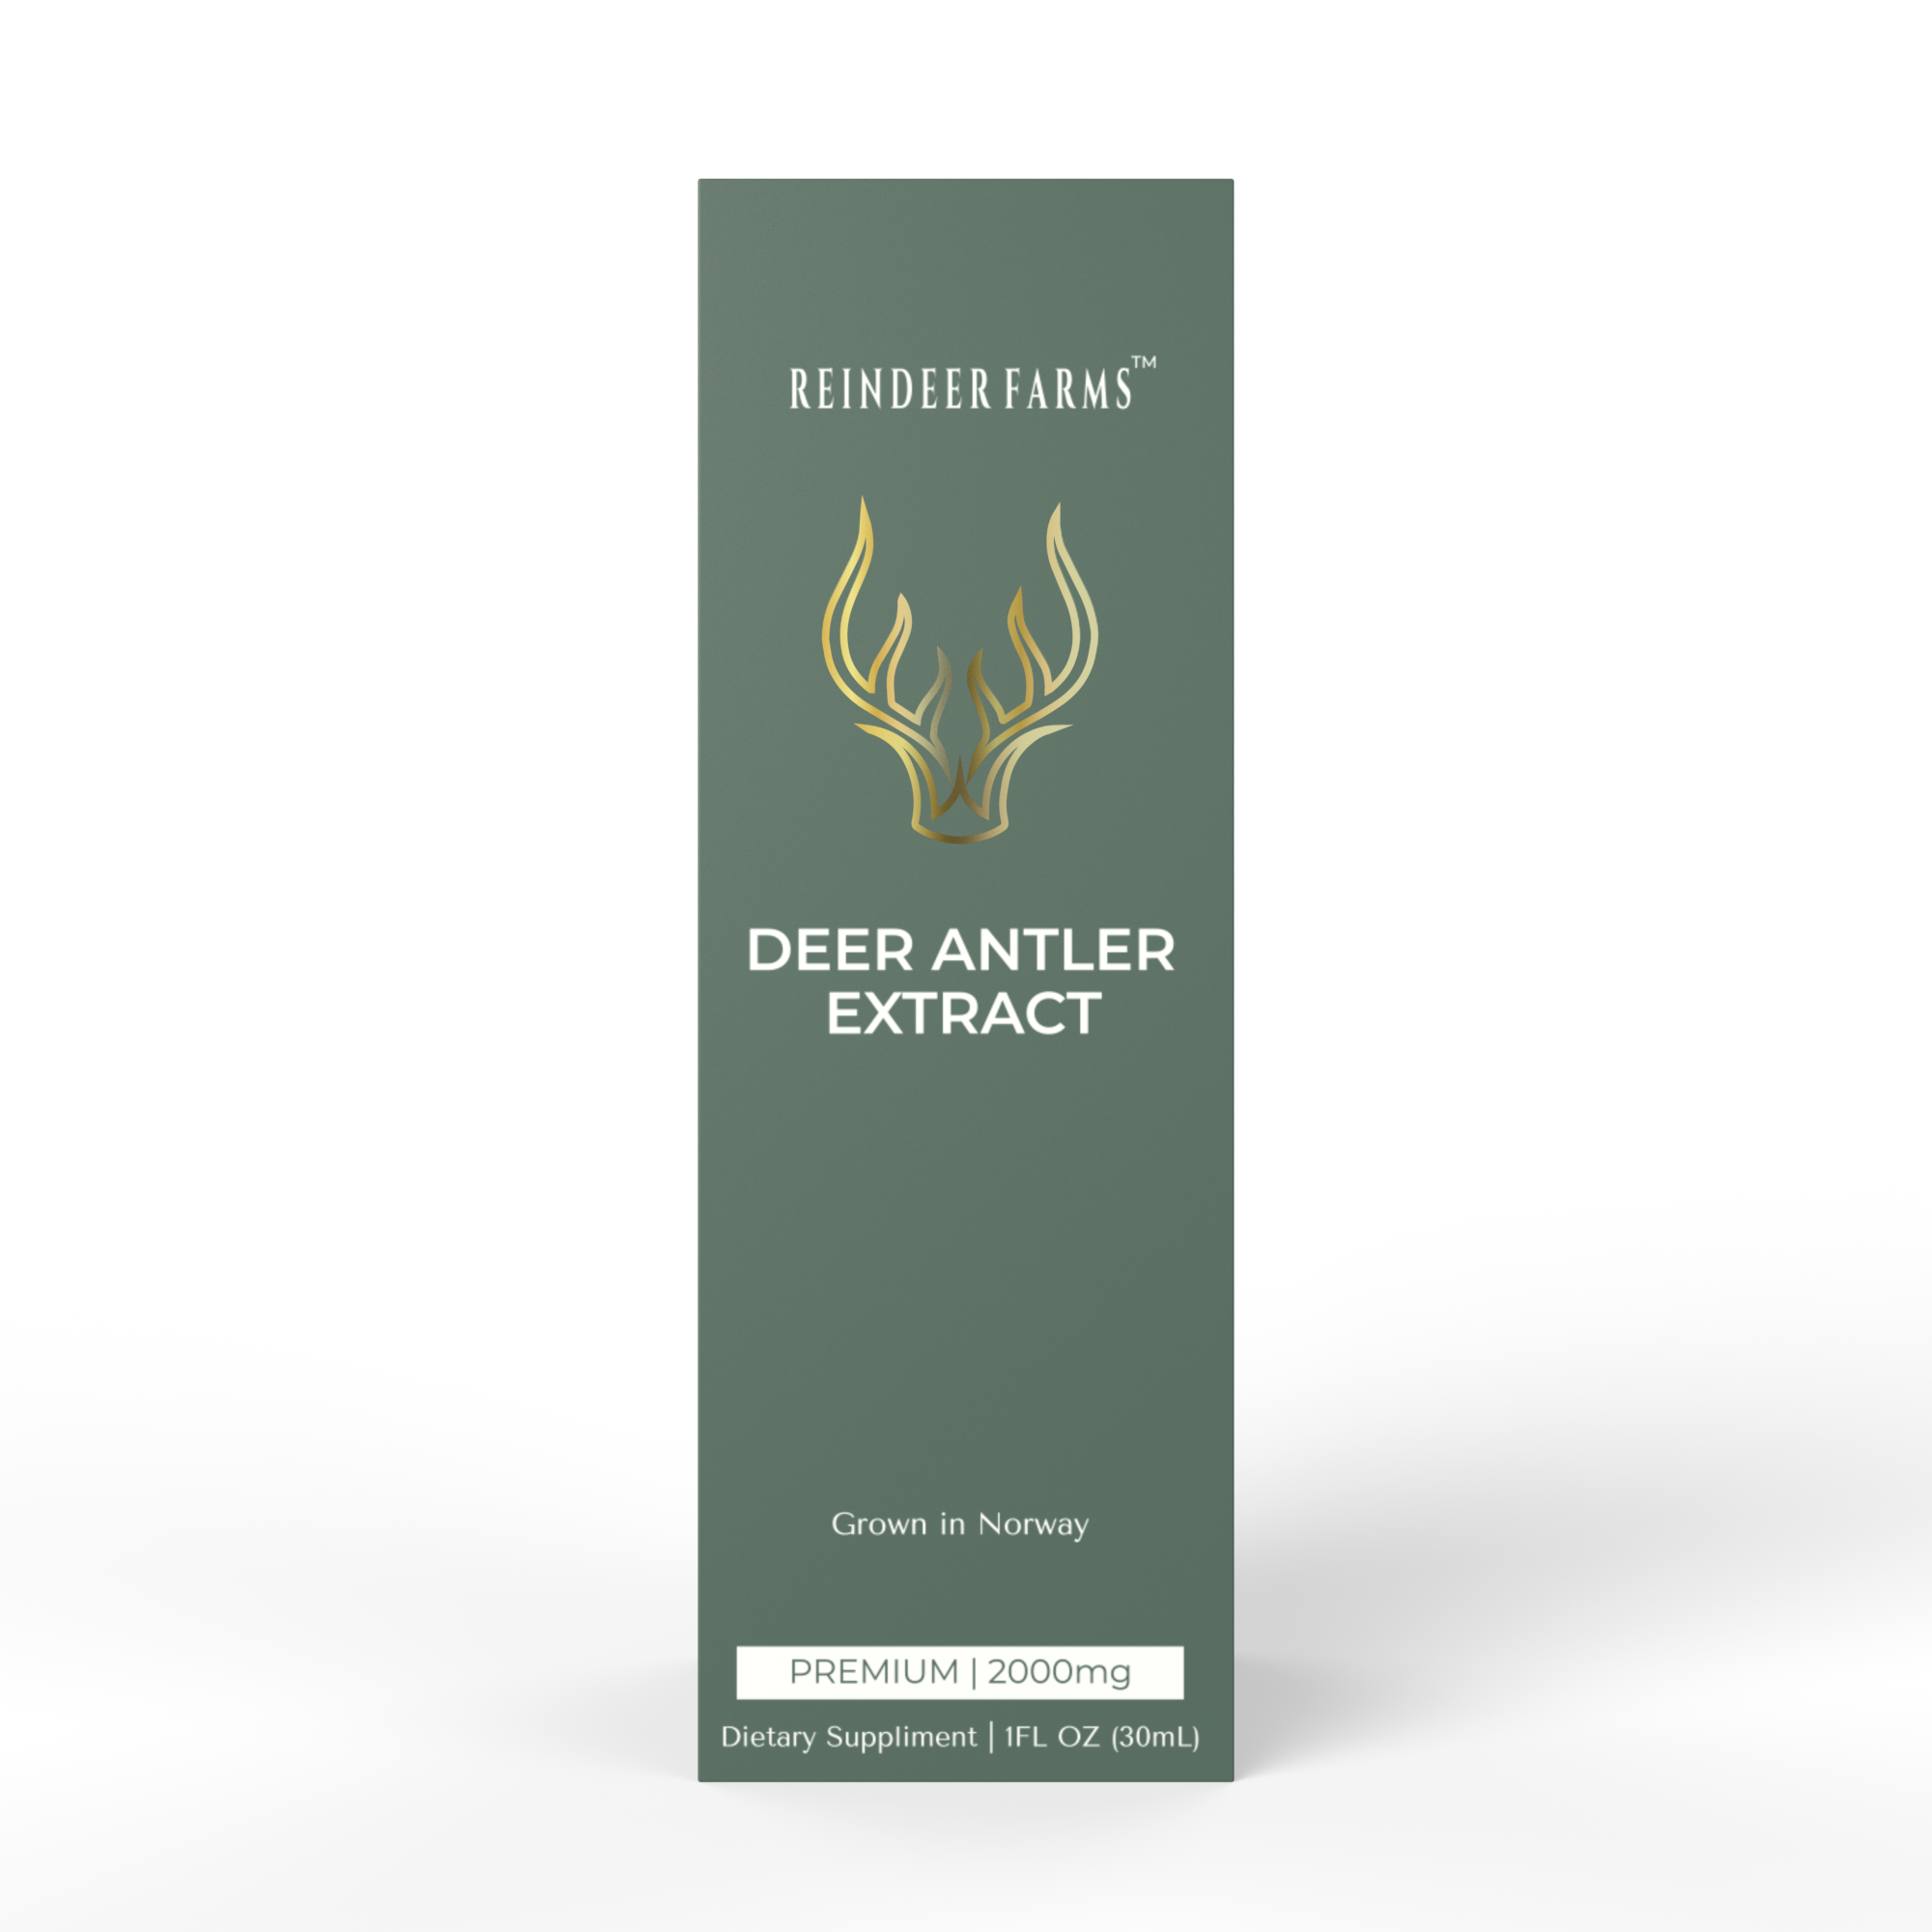 Premium Extracct - Reindeer Farms Deer Antler Velvet Extract